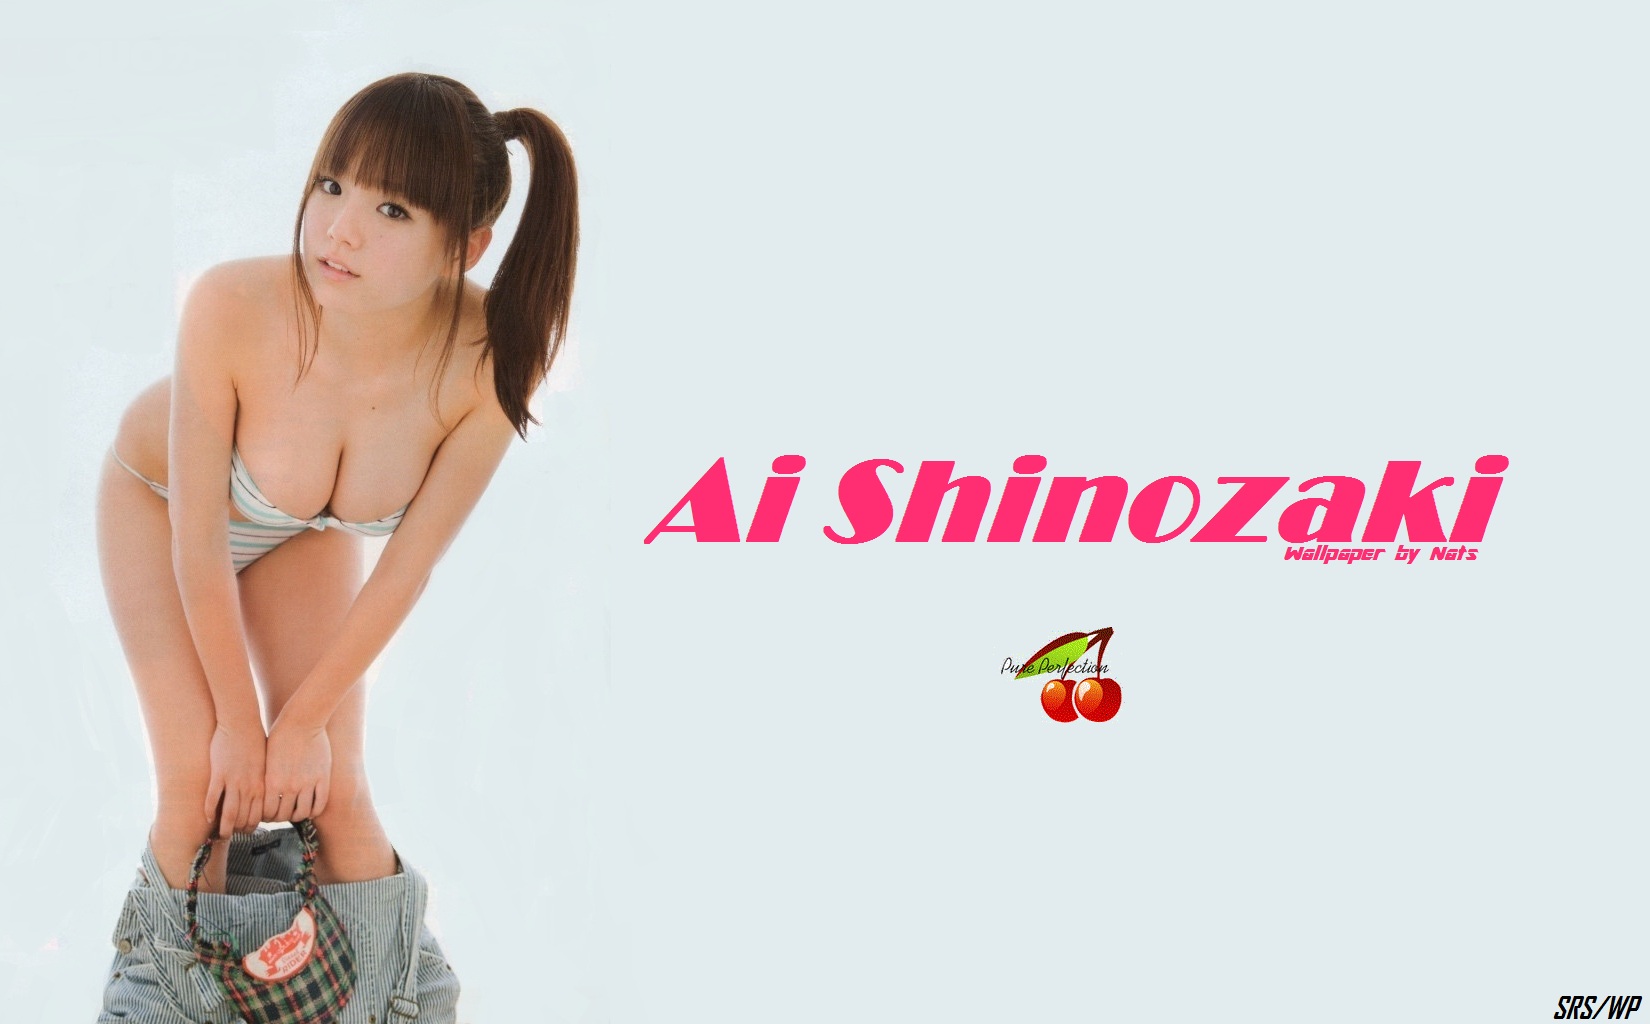 Download HQ Ai Shinozaki wallpaper / Celebrities Female / 1650x1024